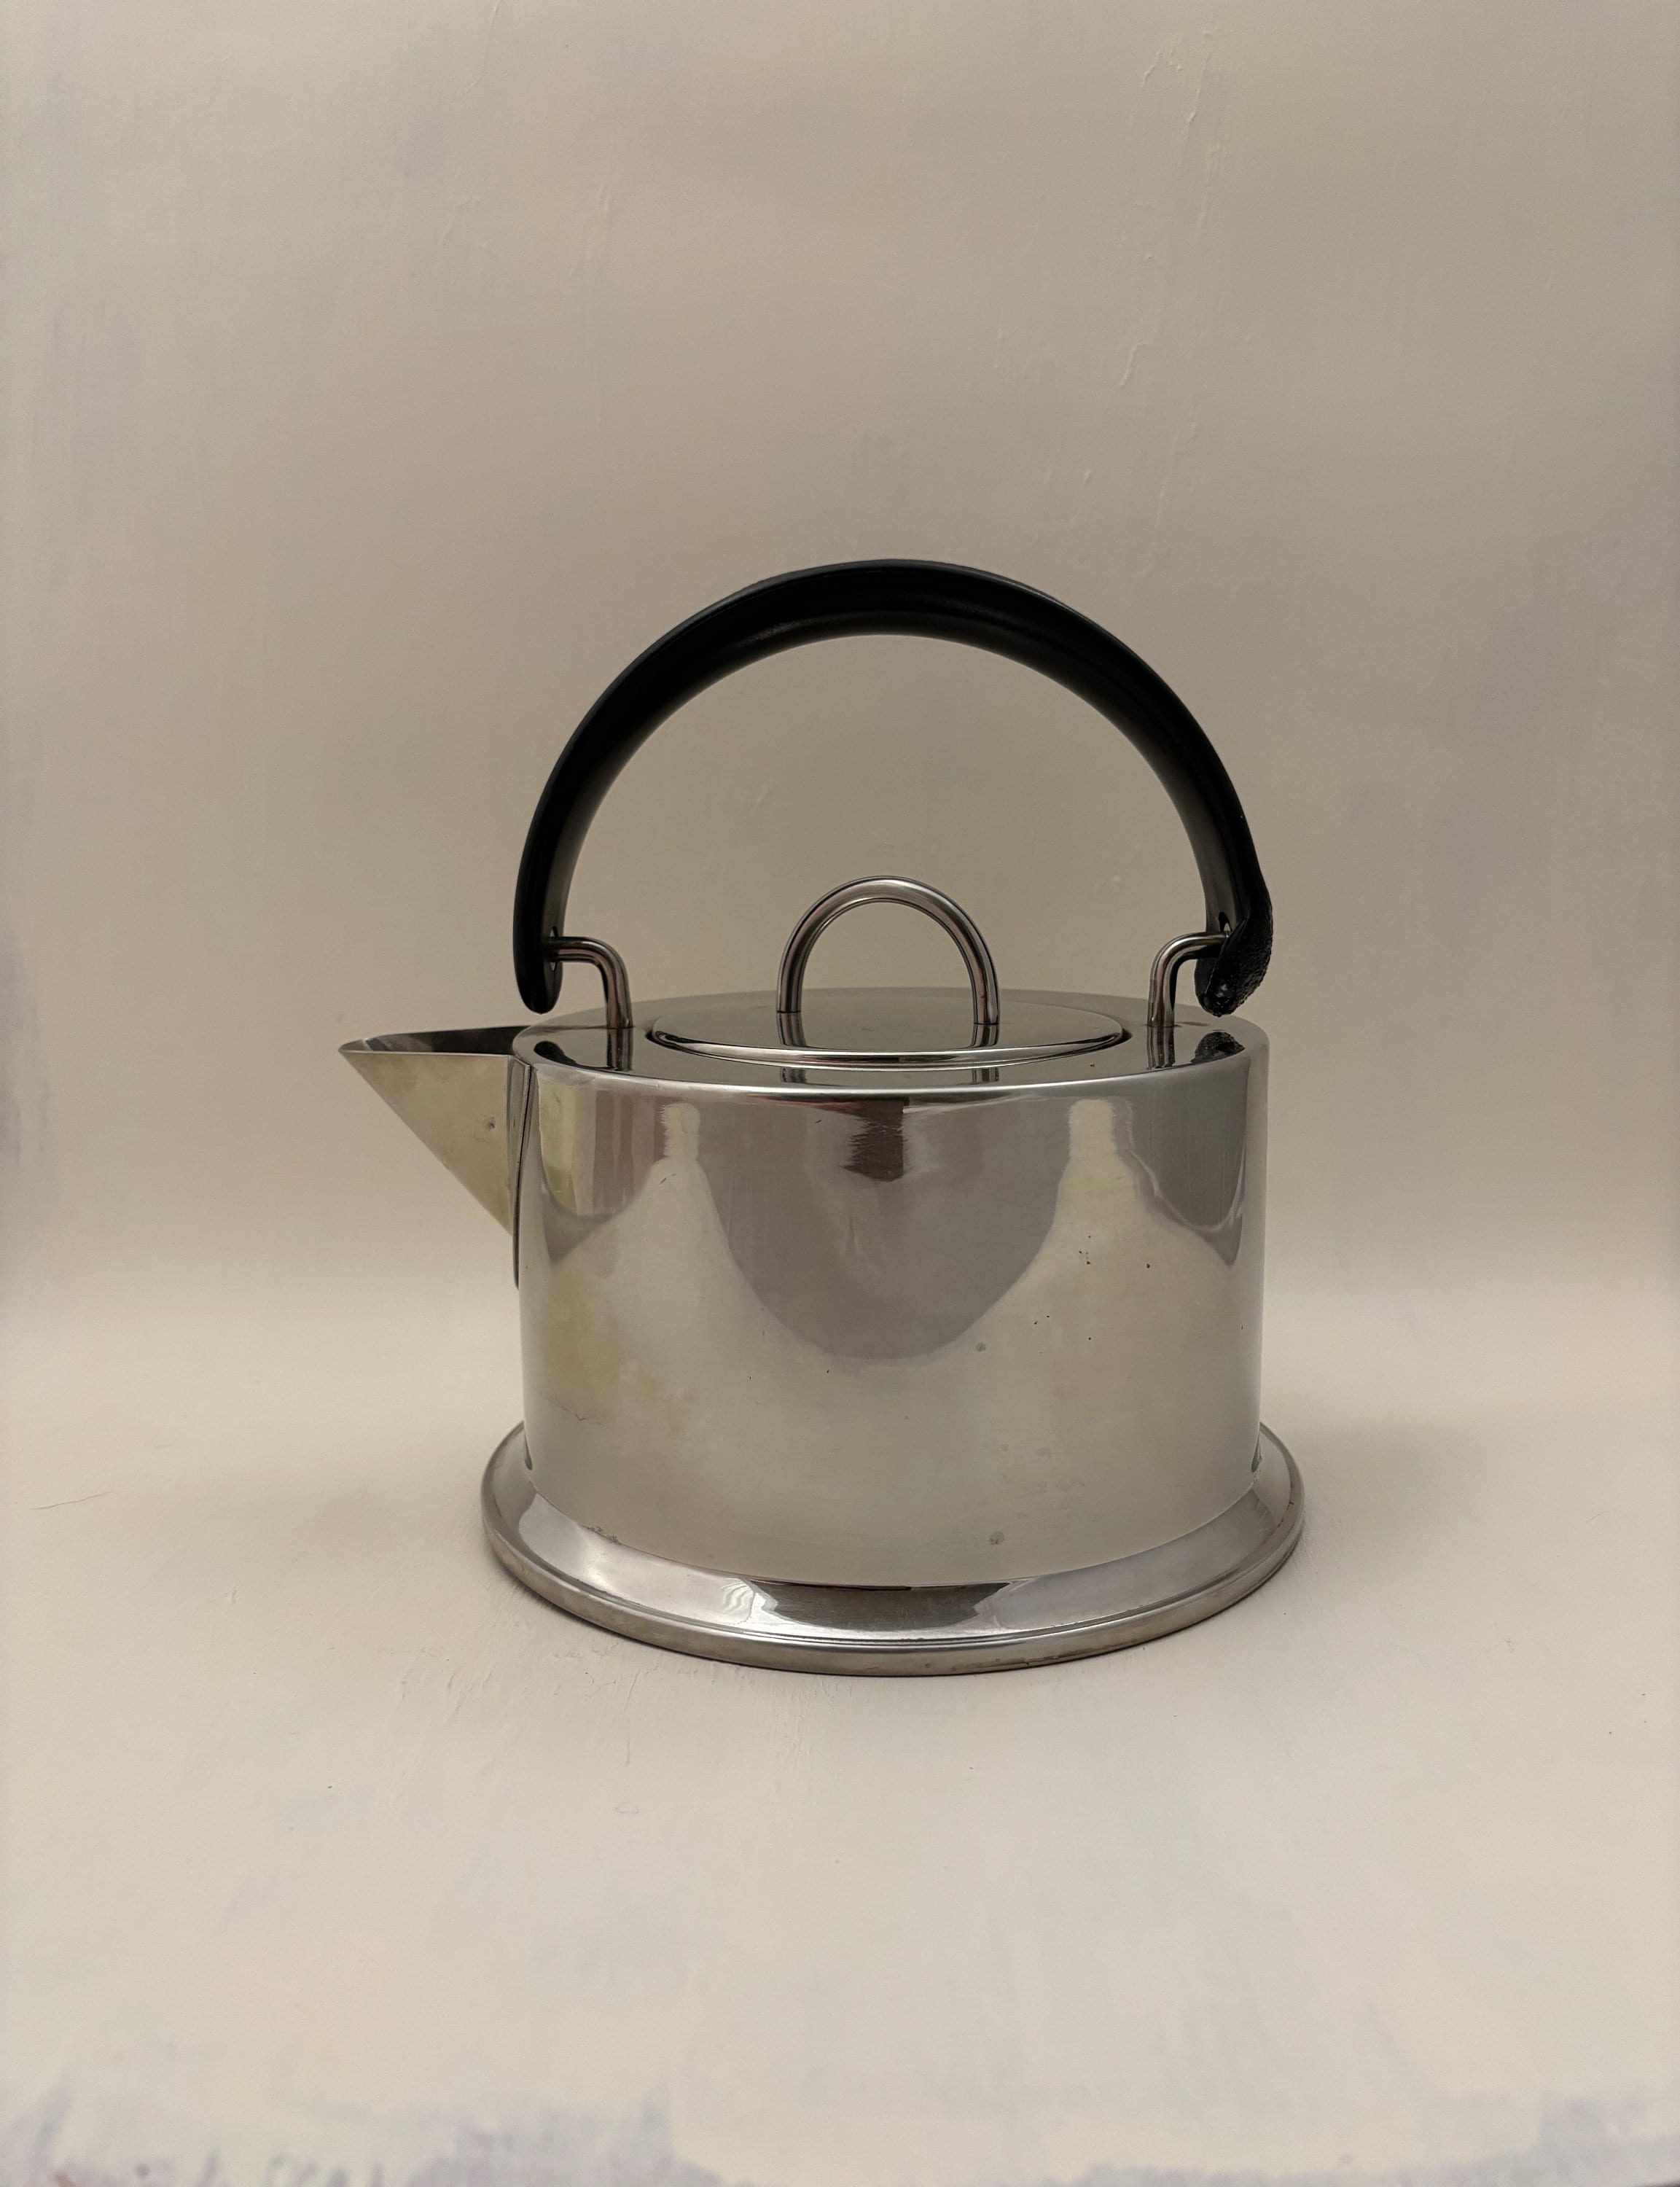 C. Jorgensen INOX 18/8 Bodum Tea Kettle Stainless Steel Made in